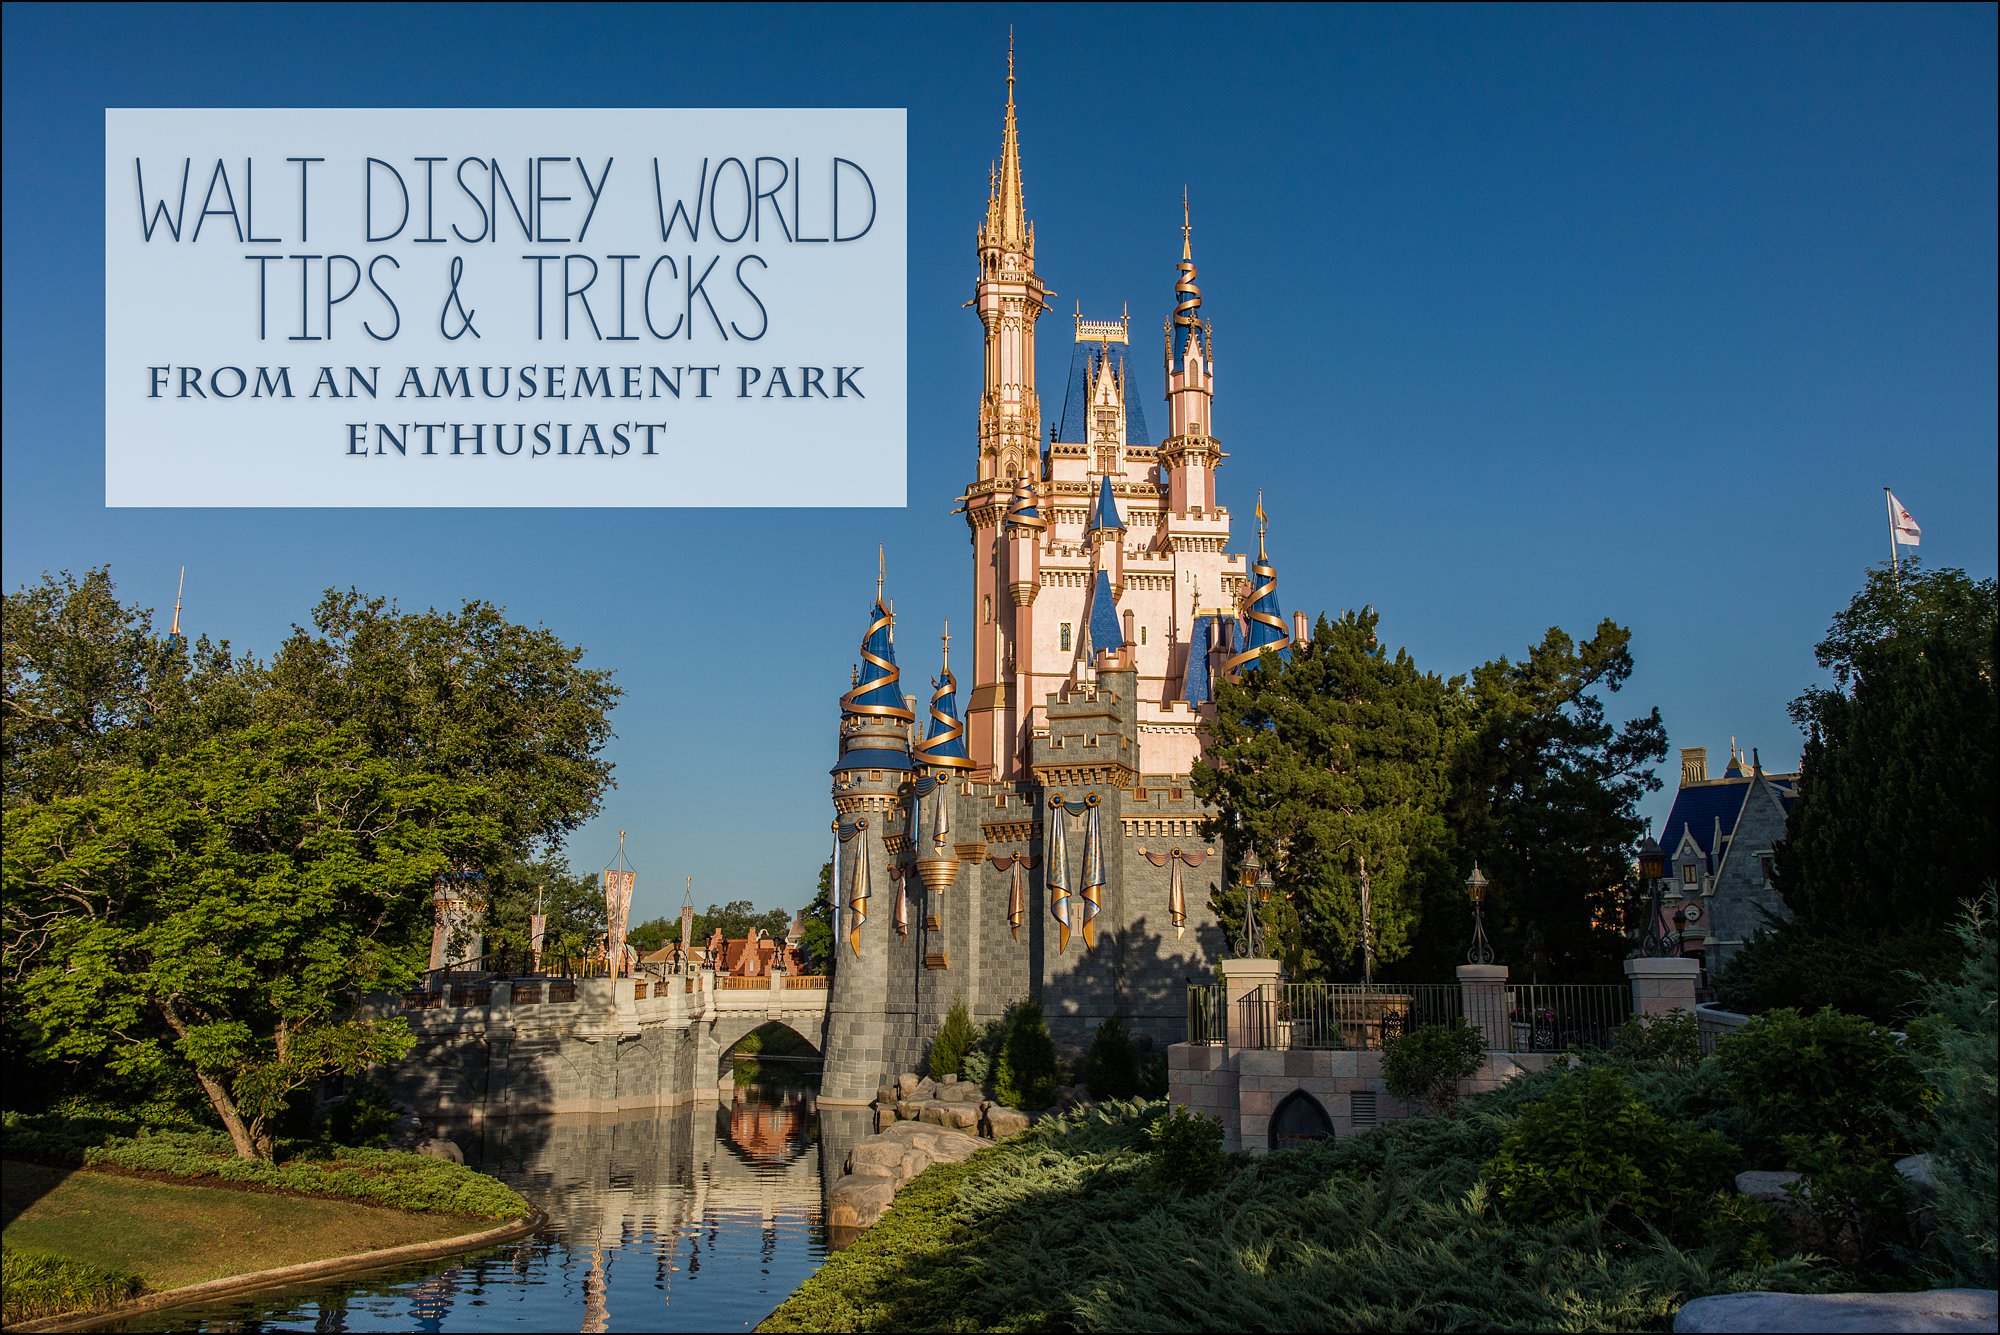 Walt Disney World Tips & Tricks from an amusement park enthusiast